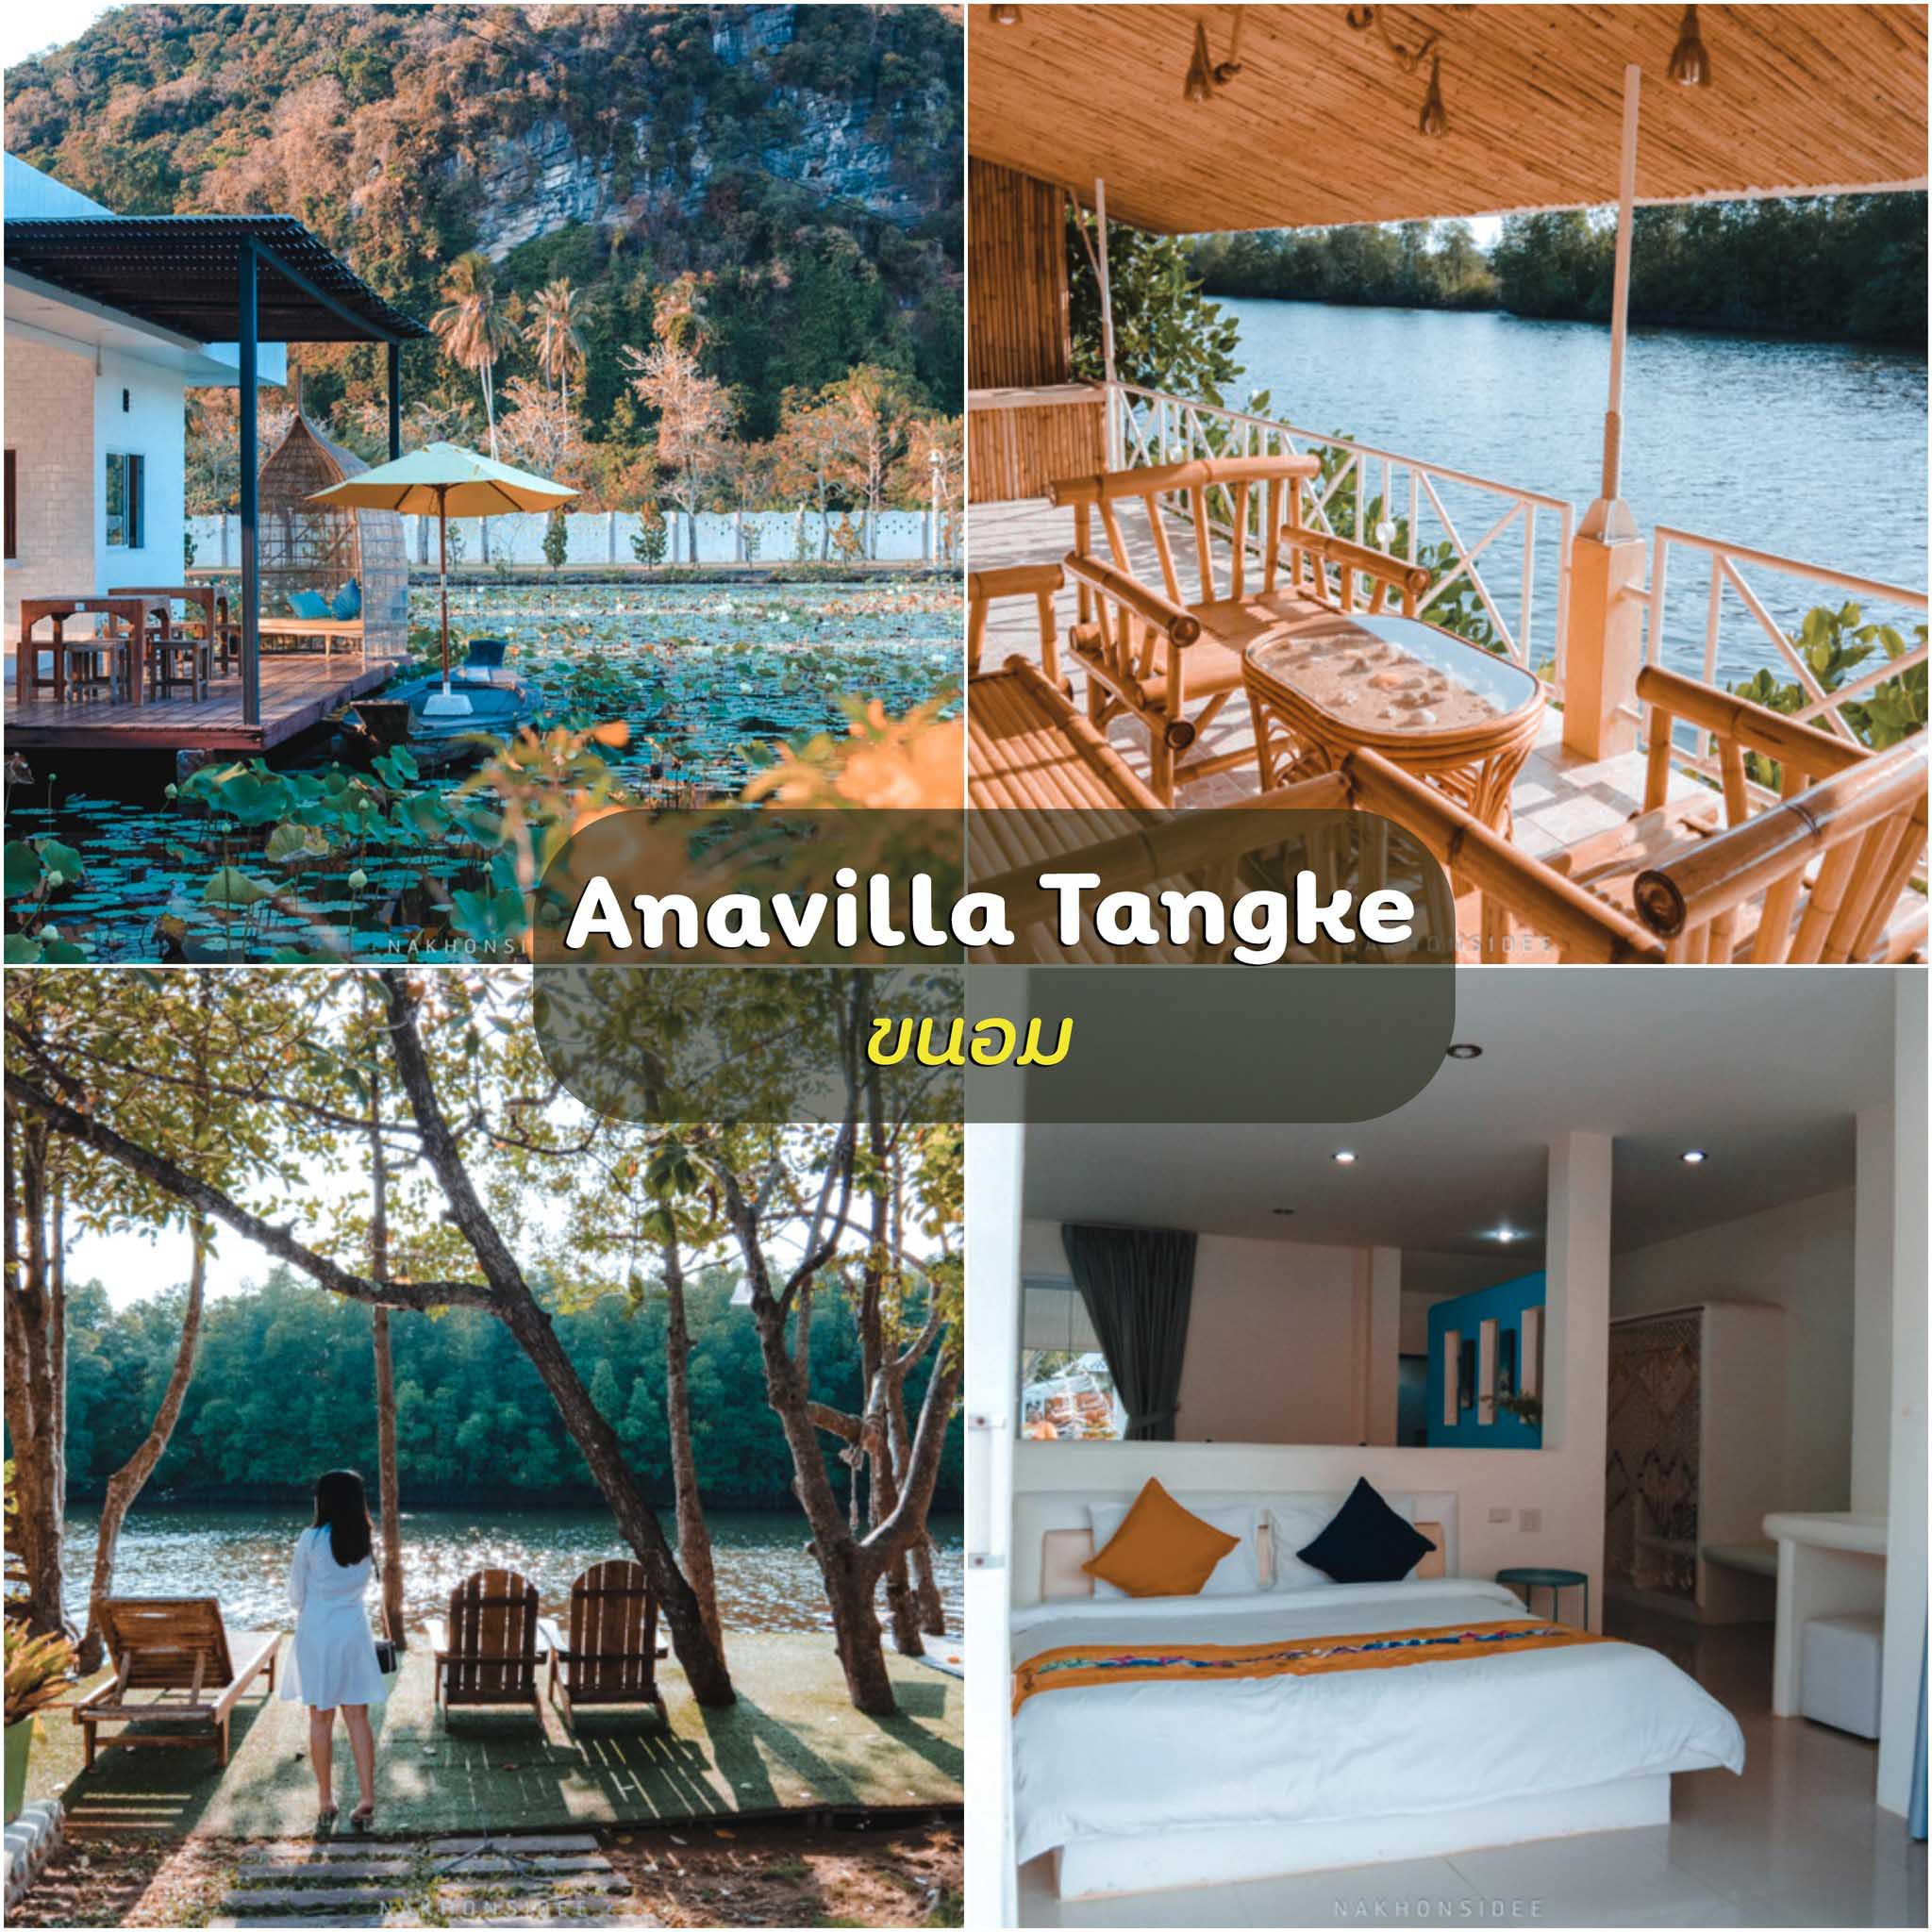 Anavilla-Tangke-Resort- ขนอม-ที่พักสุดสวยพร้อมร้านอาหารอร่อยๆ-ริมน้ำ-ริมภูเขา-ฟินน-
 ที่เที่ยวธรรมชาตินครศรีธรรมราช,นครศรี,จุดเช็คอิน,ที่พัก